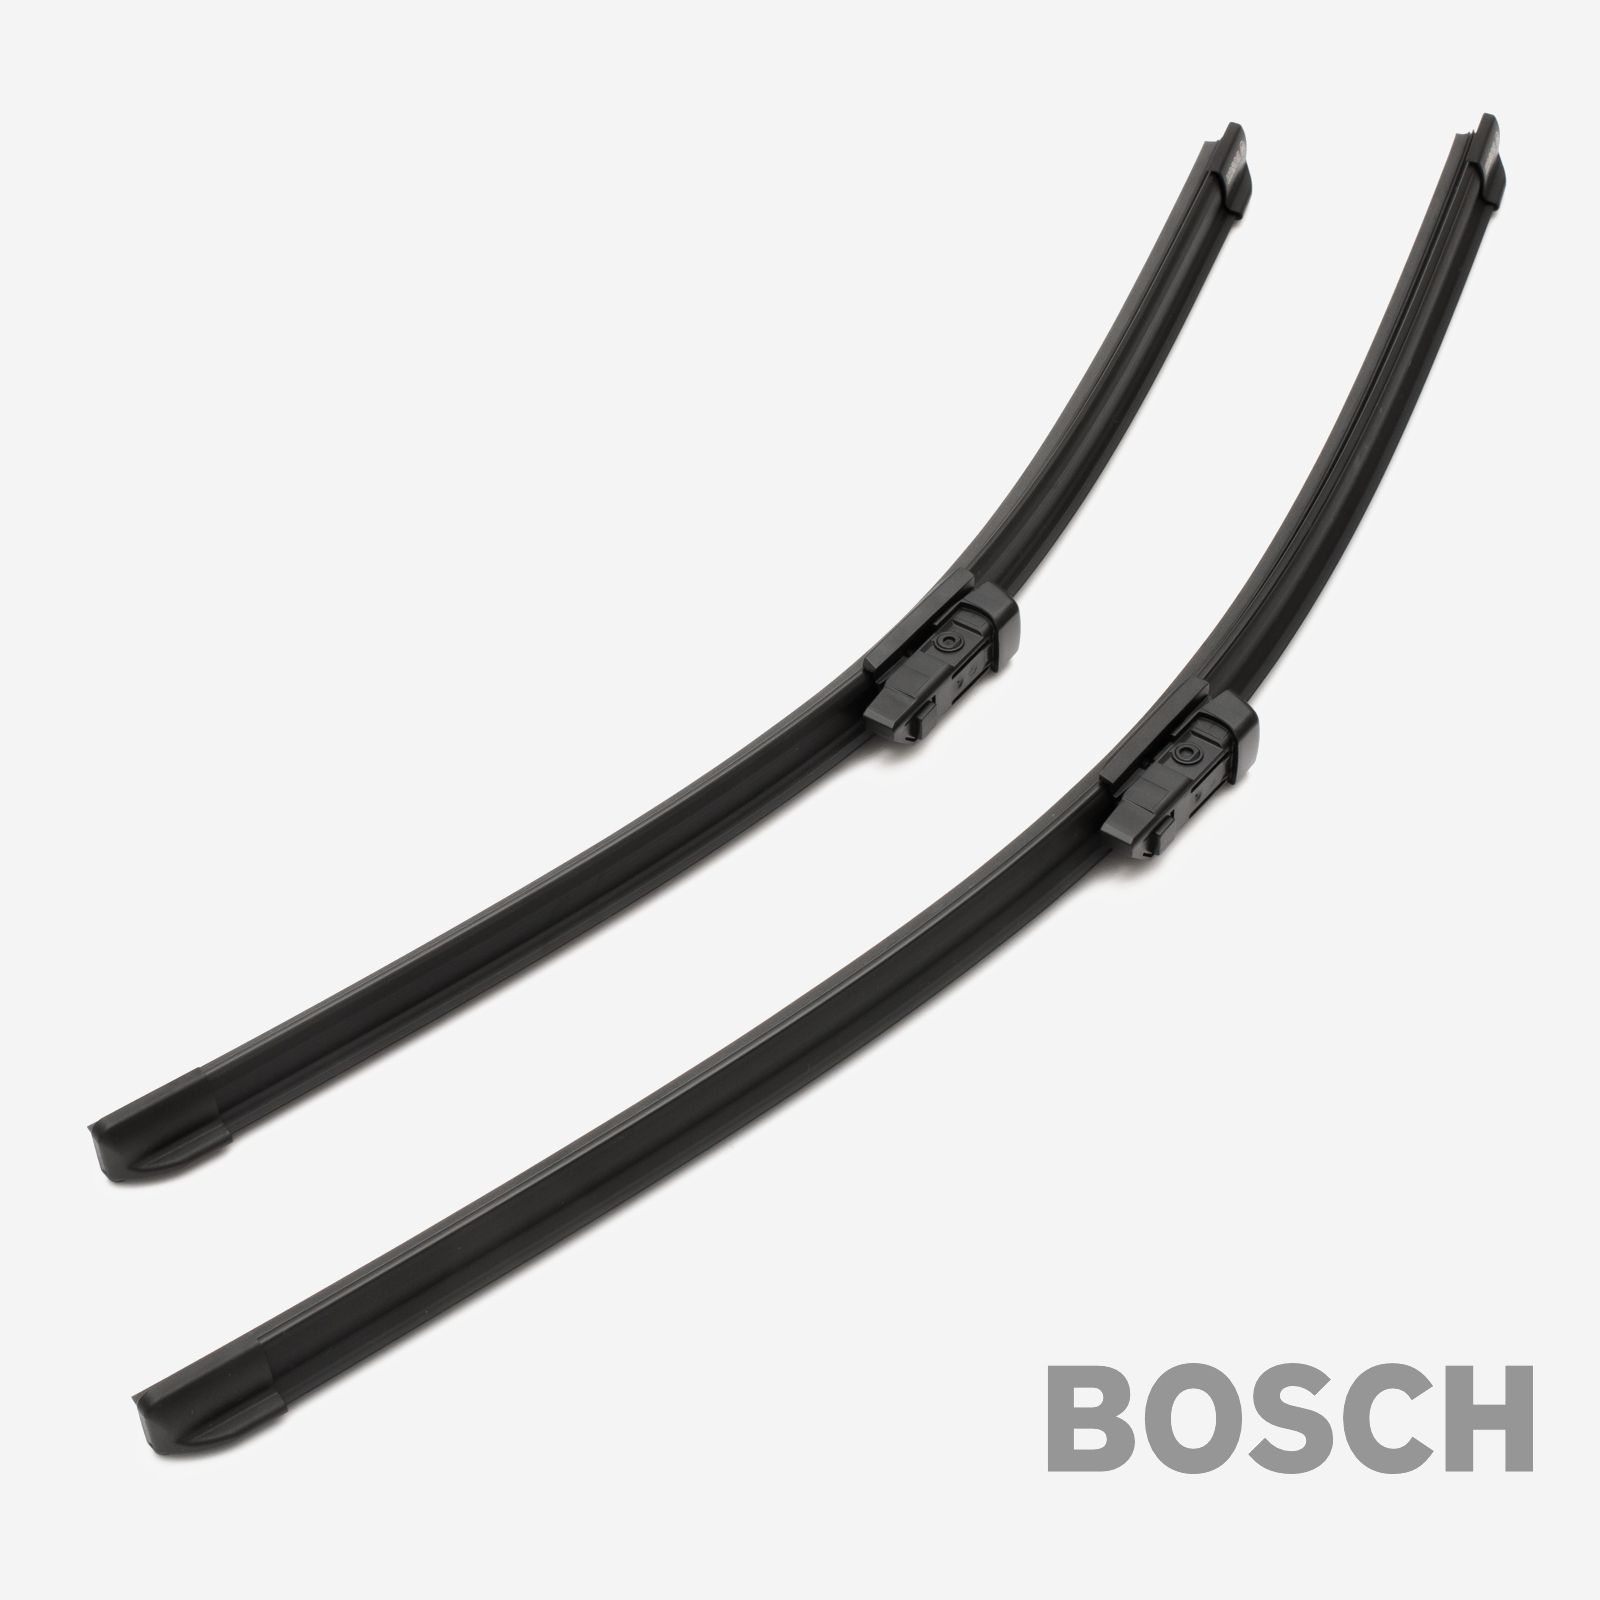 Scheibenwischer Wischblätter Bosch Aerotwin A863S neu OVP